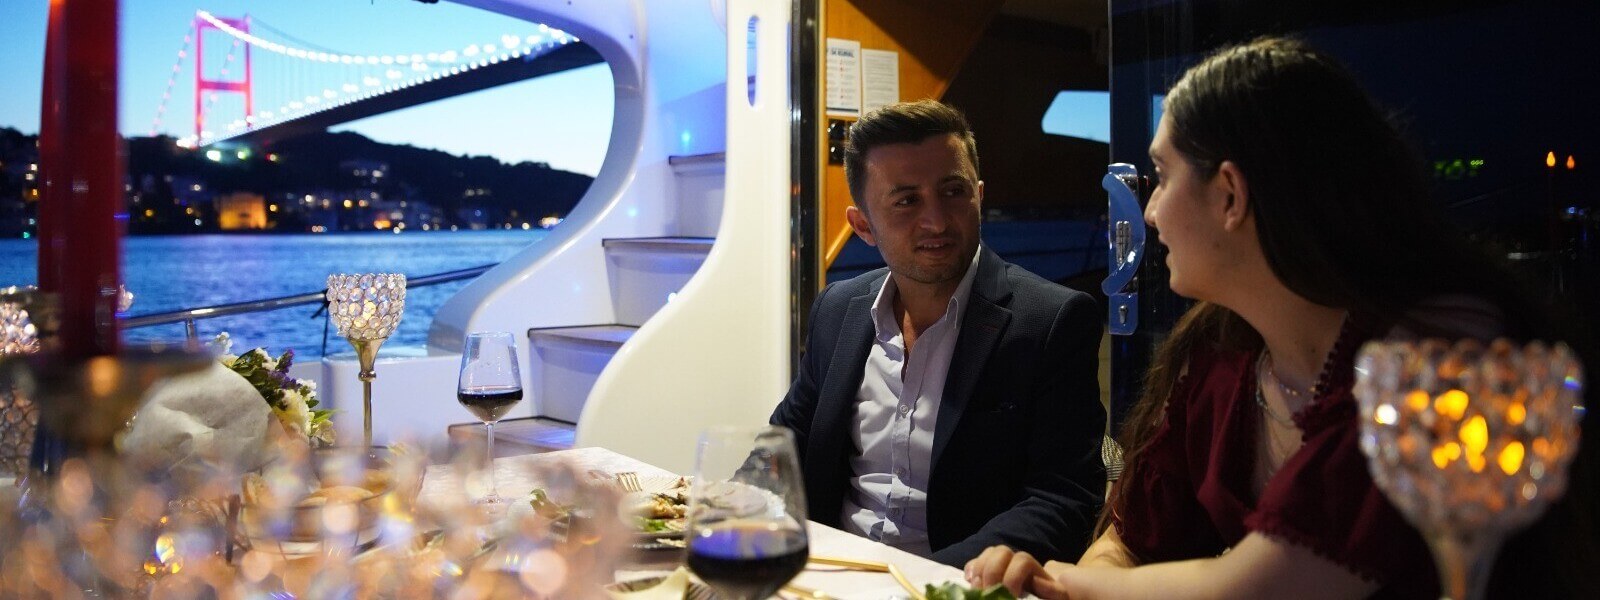 Dinner on the Yacht